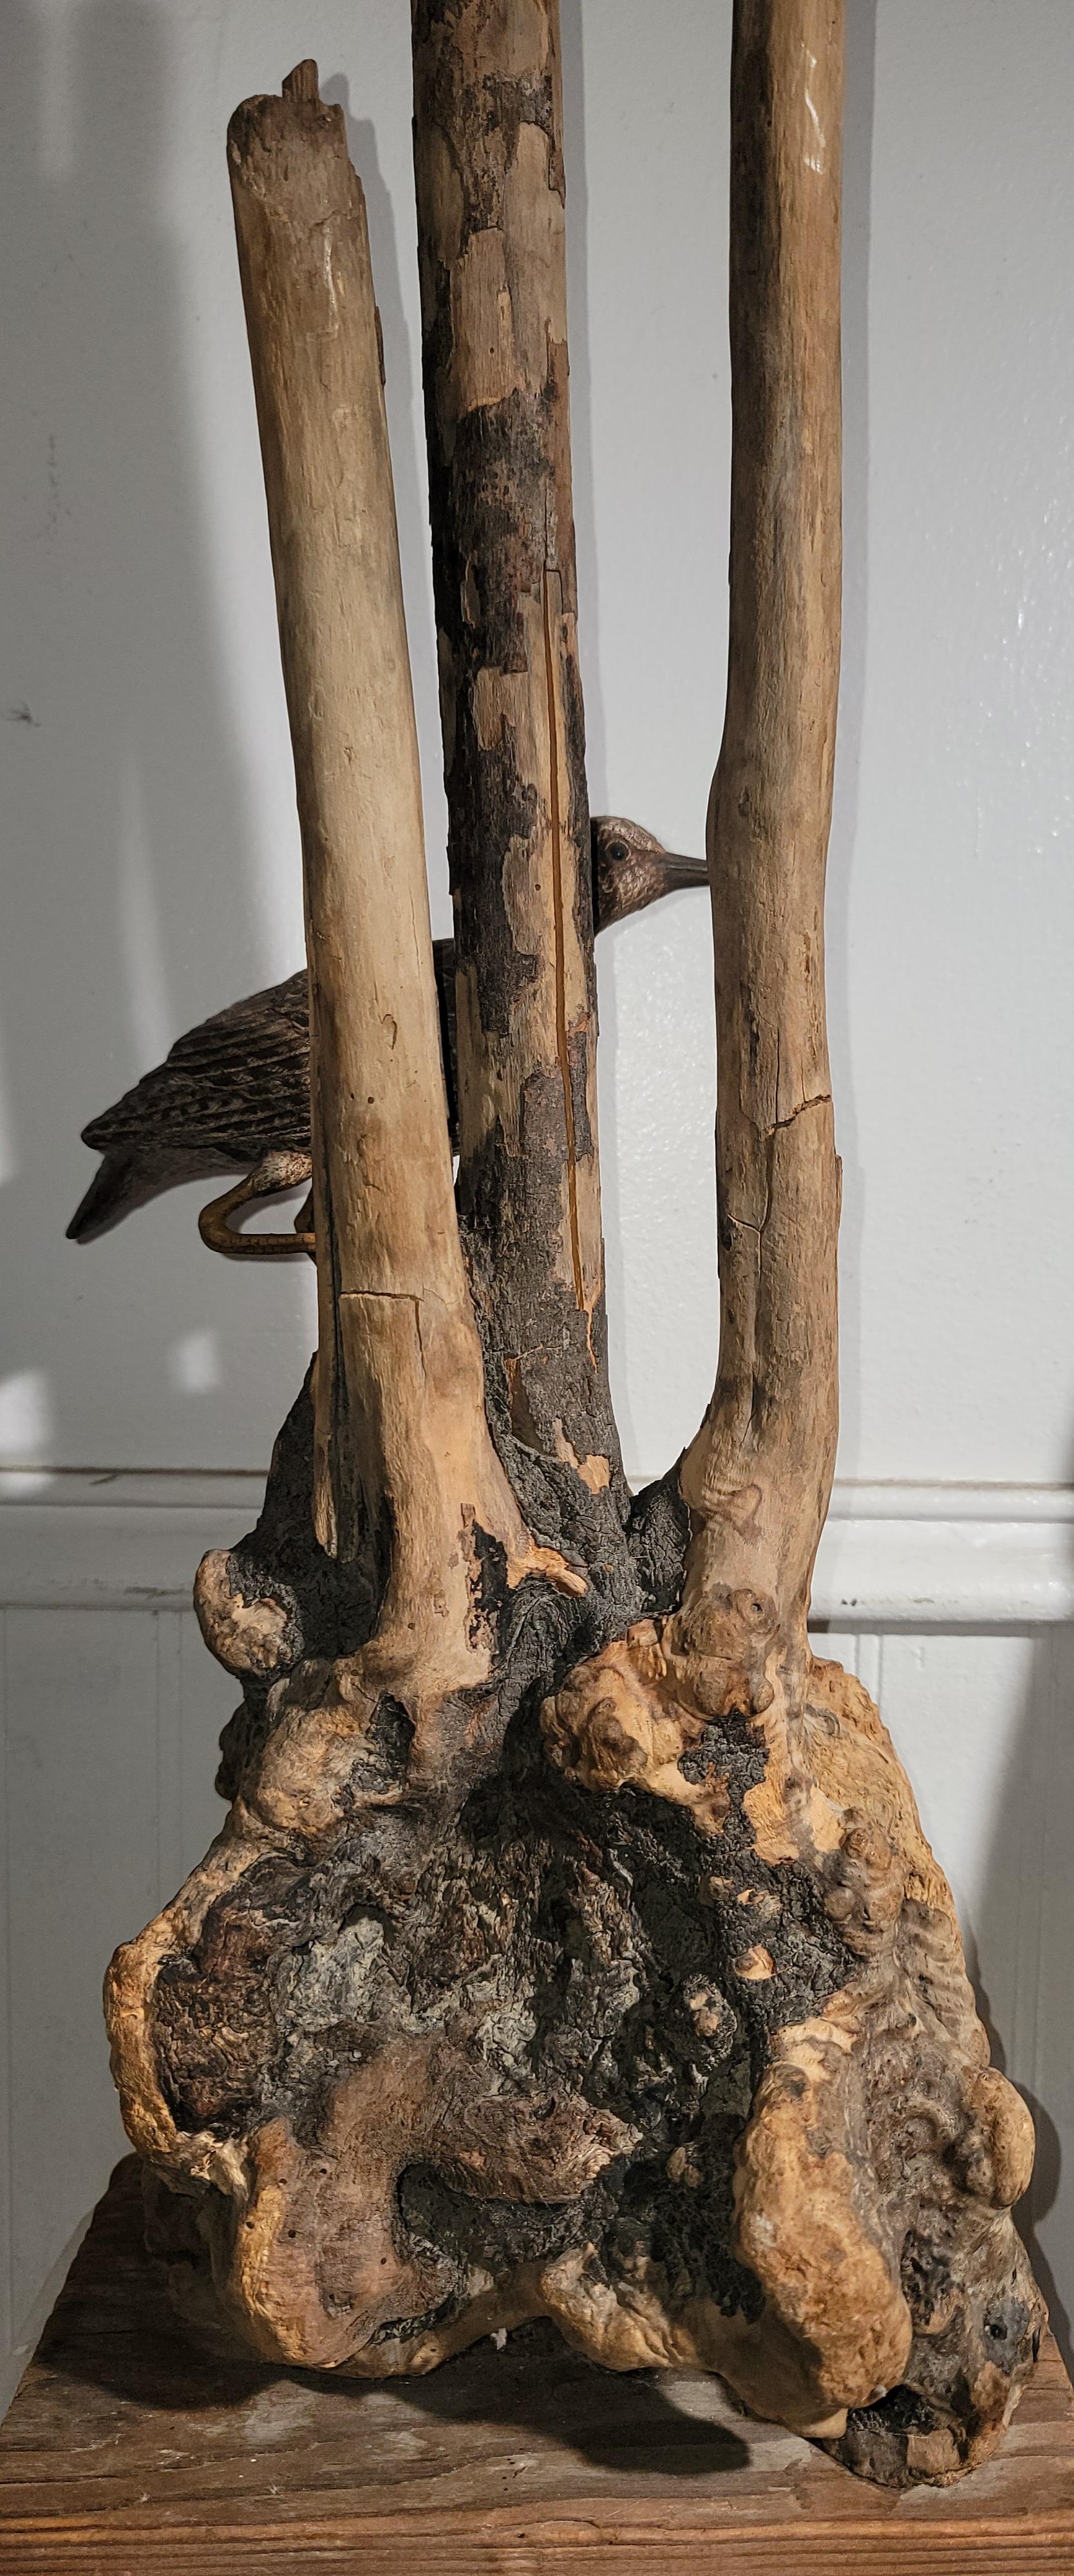 Diese Volkskunst-Skulptur aus Treibholz und eine Planke Holz Basis ist alles handgemacht.der Vogel ist auch Holzschnitzerei hinzugefügt, um die Treibholz Skulptur.der Zustand ist sehr gut, wie gefunden Zustand.